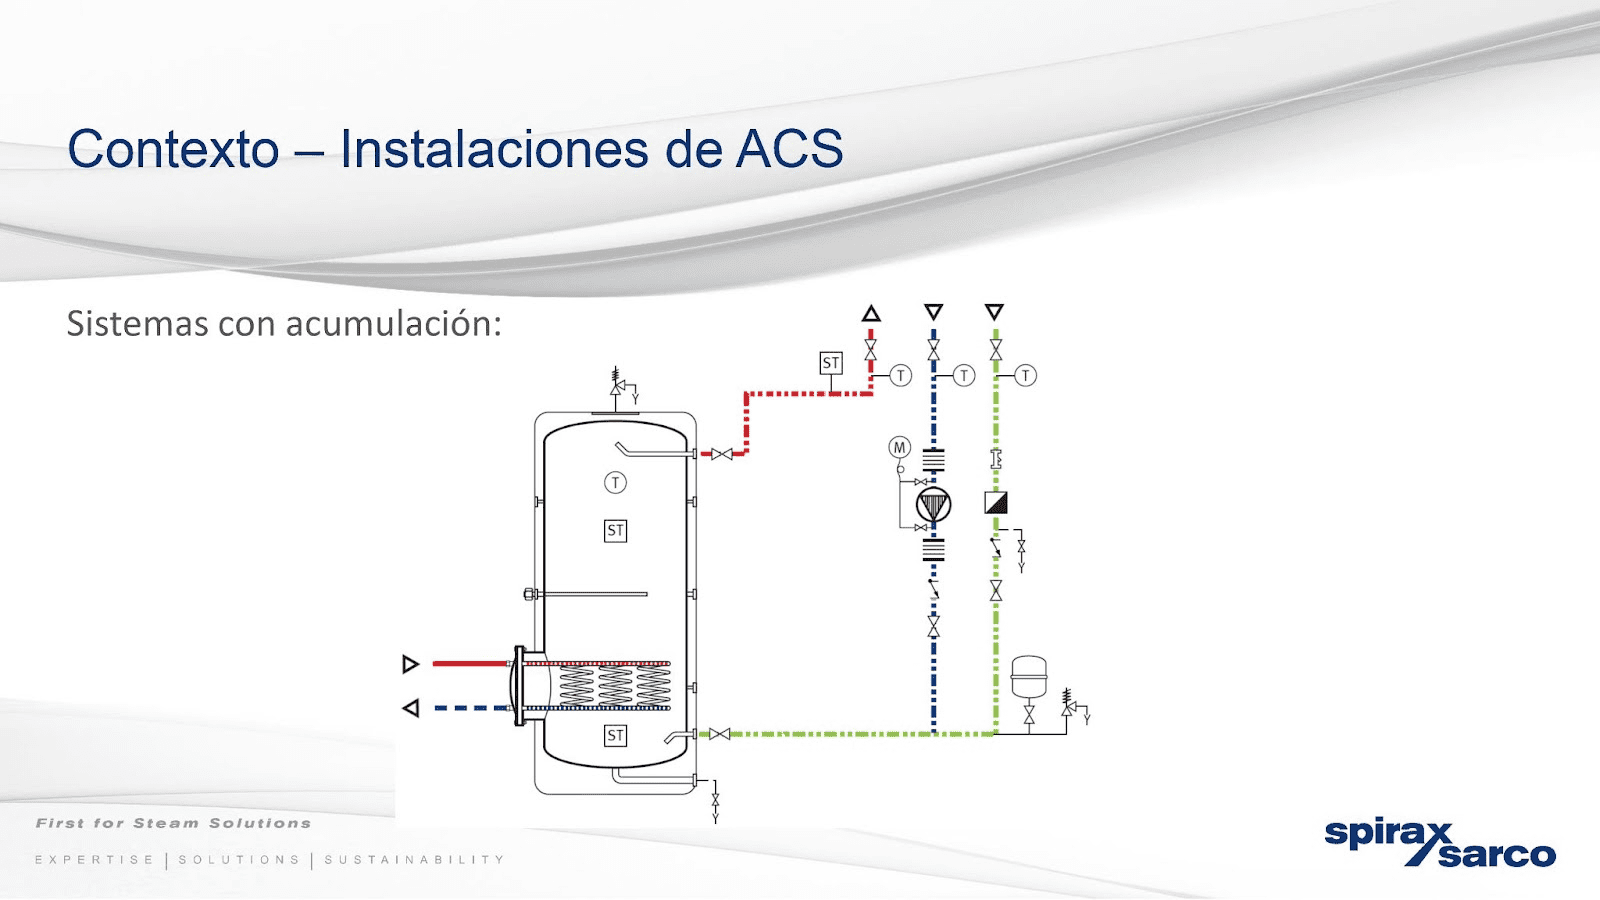 Sistemas de ACS con acumulación